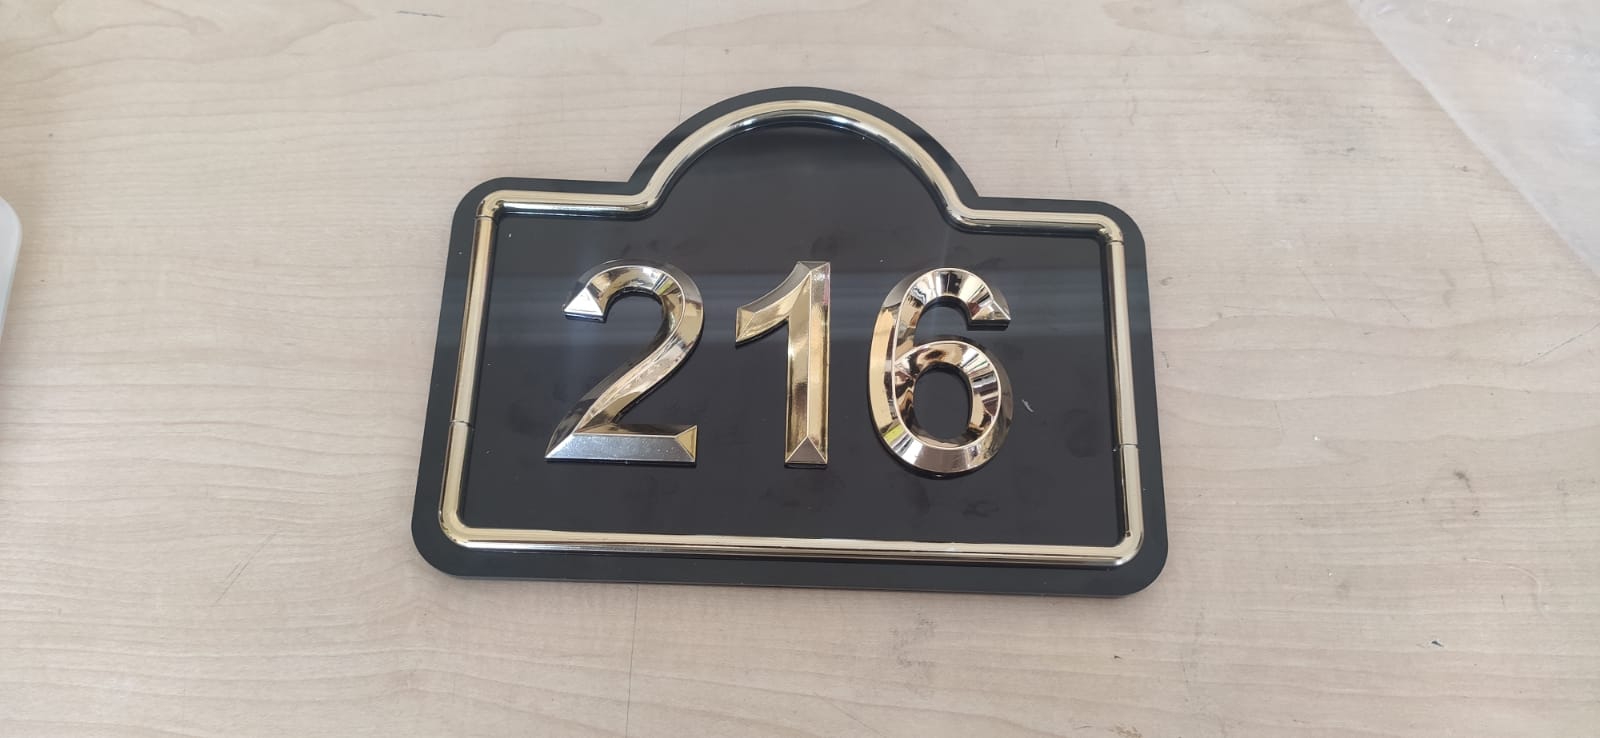  Door Number - Gold Plated - Model 04